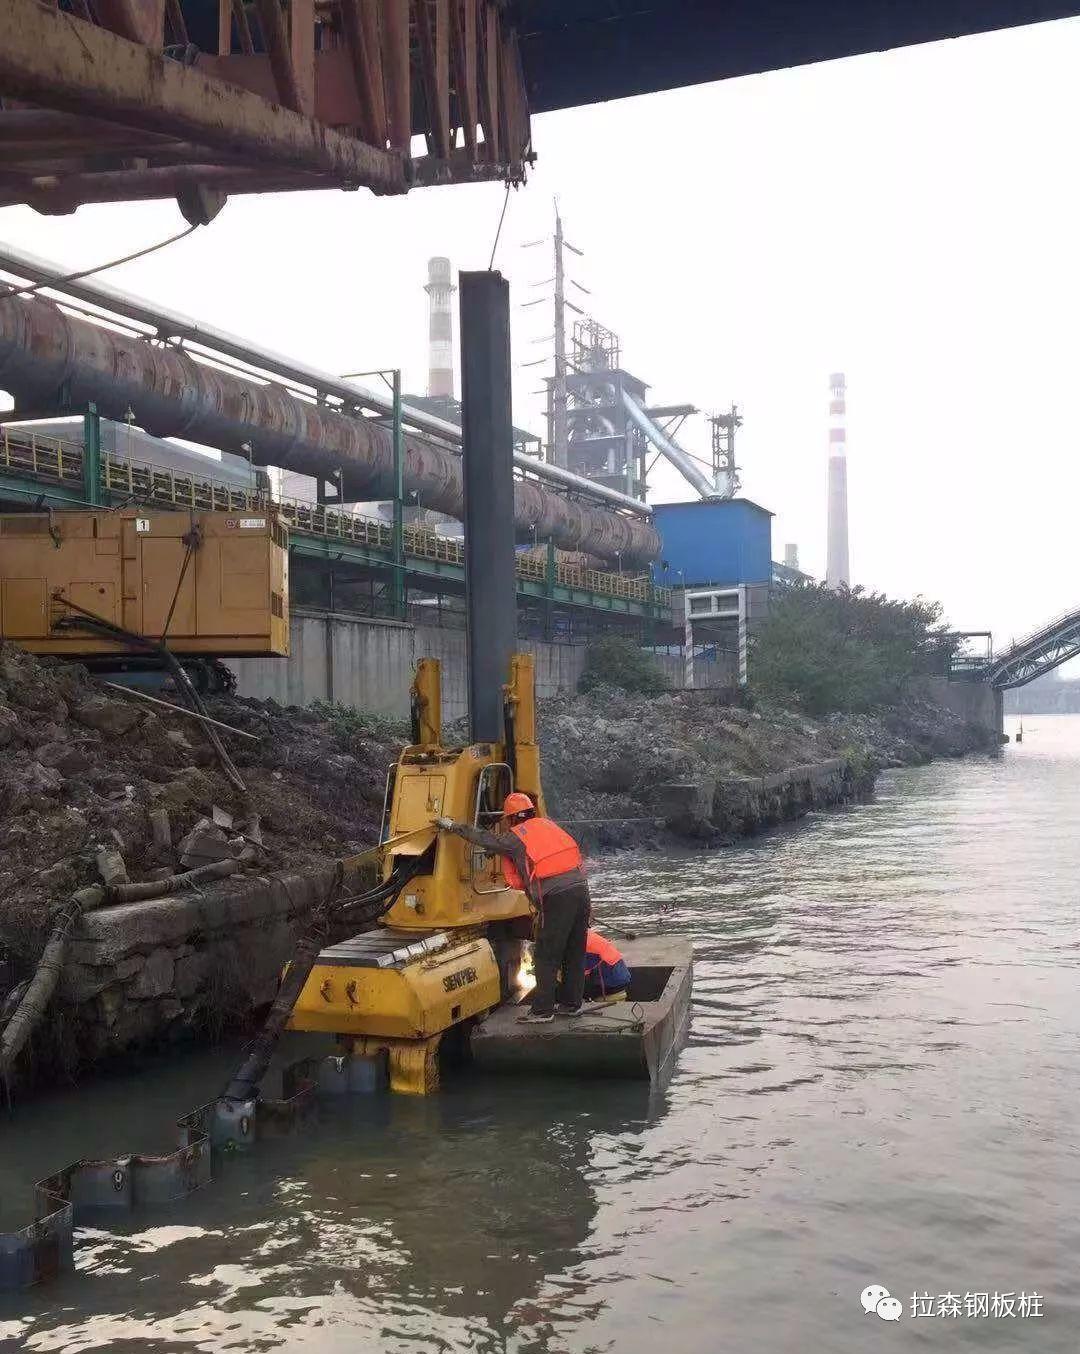 静压植桩工法首次助力跨线管道桥下护岸施工